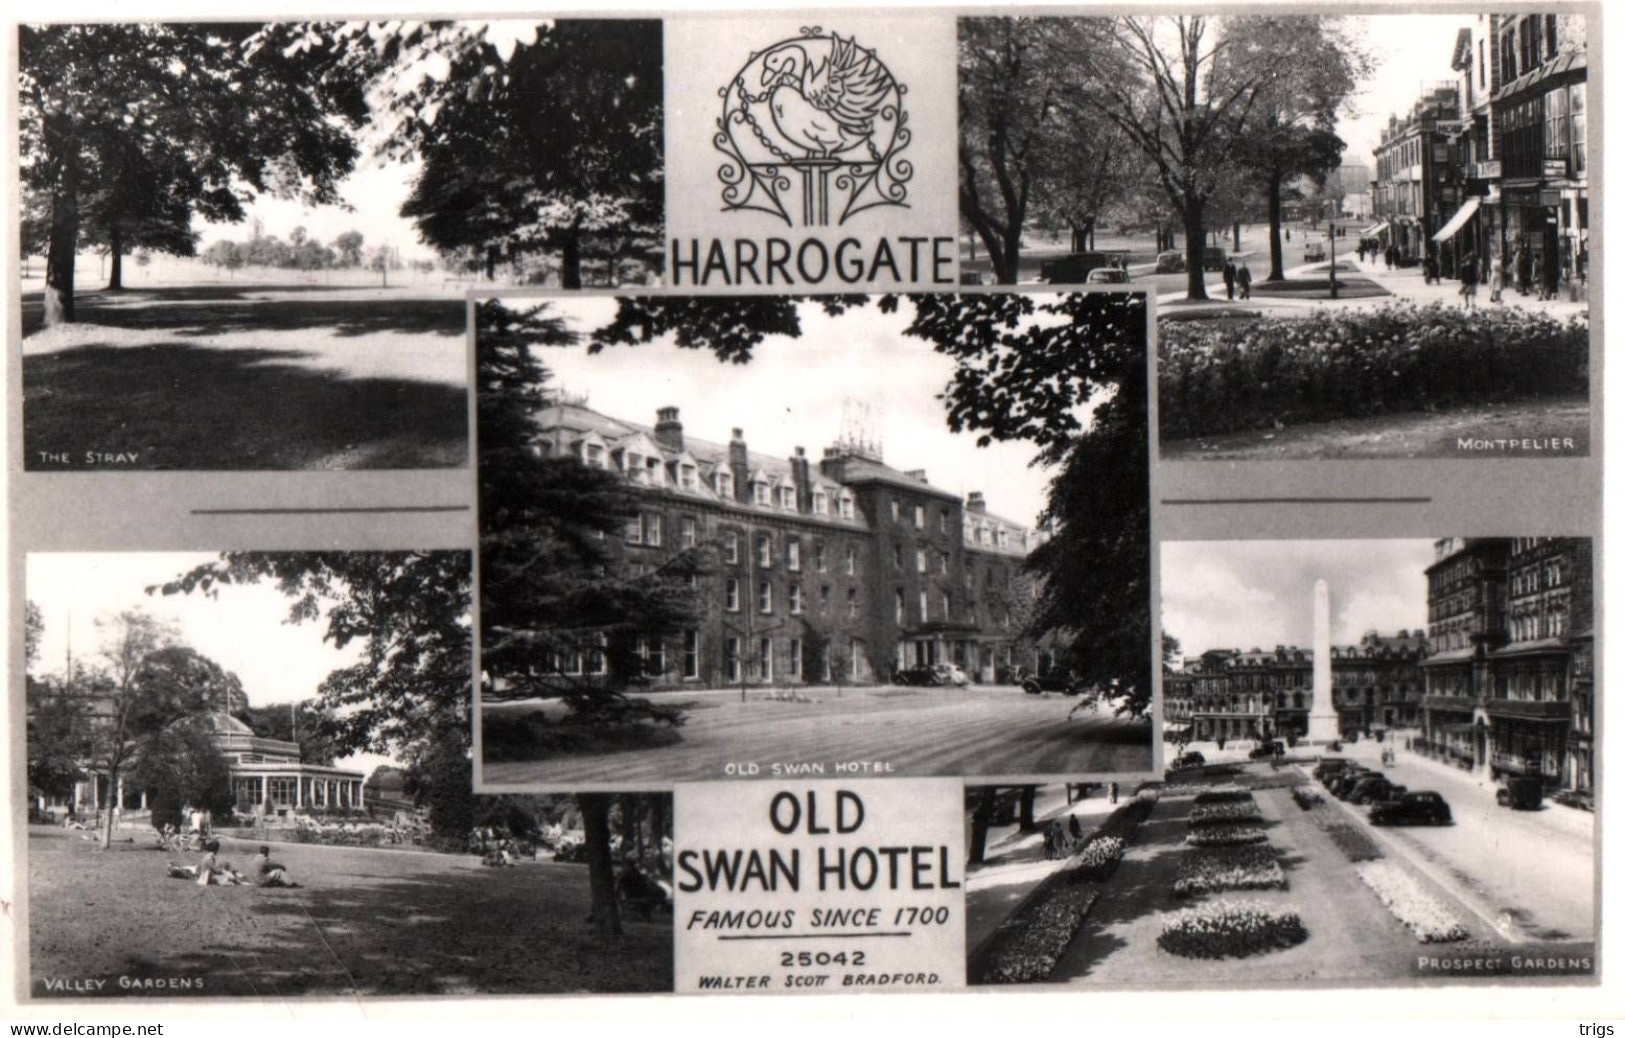 Harrogate - "Old Swan Hotel" - Harrogate